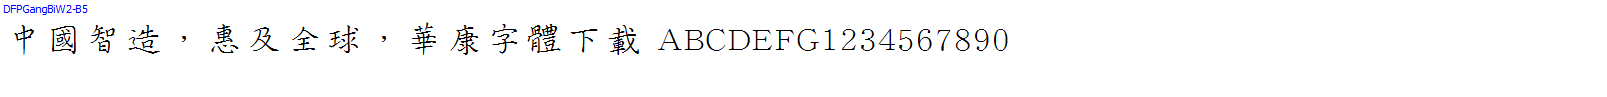 華康字體DFPGangBiW2-B5.TTF